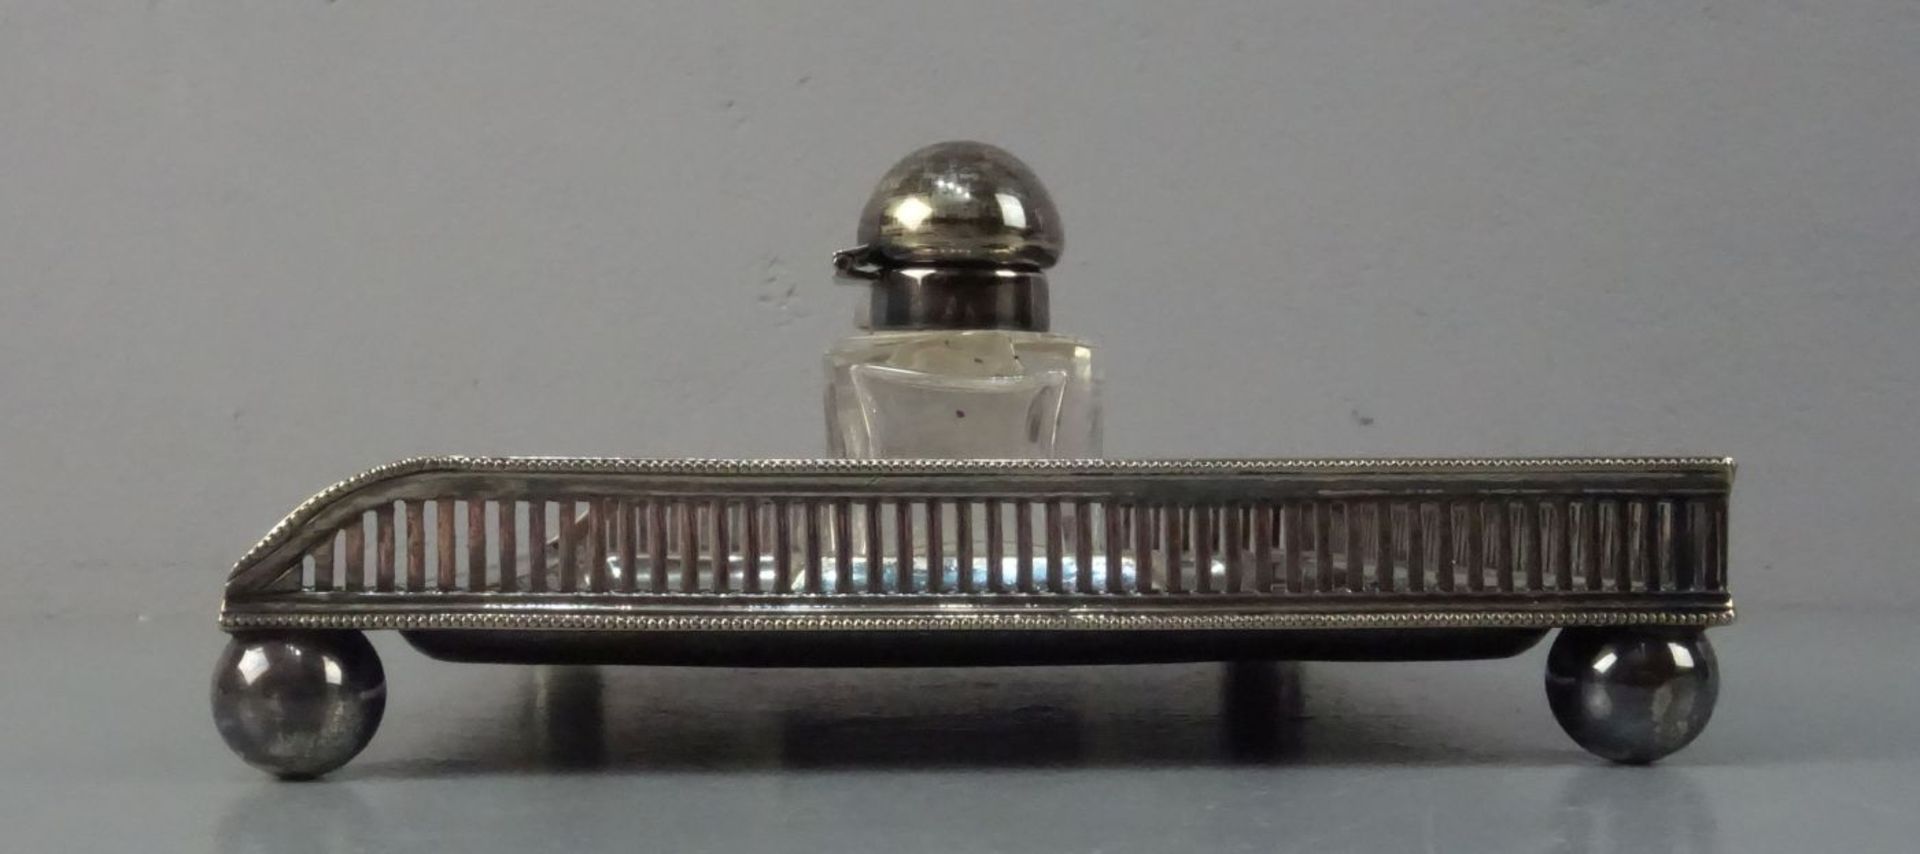 TINTENFASS / SCHREIBTISCHAUFSATZ / inkstand, versilbertes Metall und Kristallglas, wohl - Bild 3 aus 3